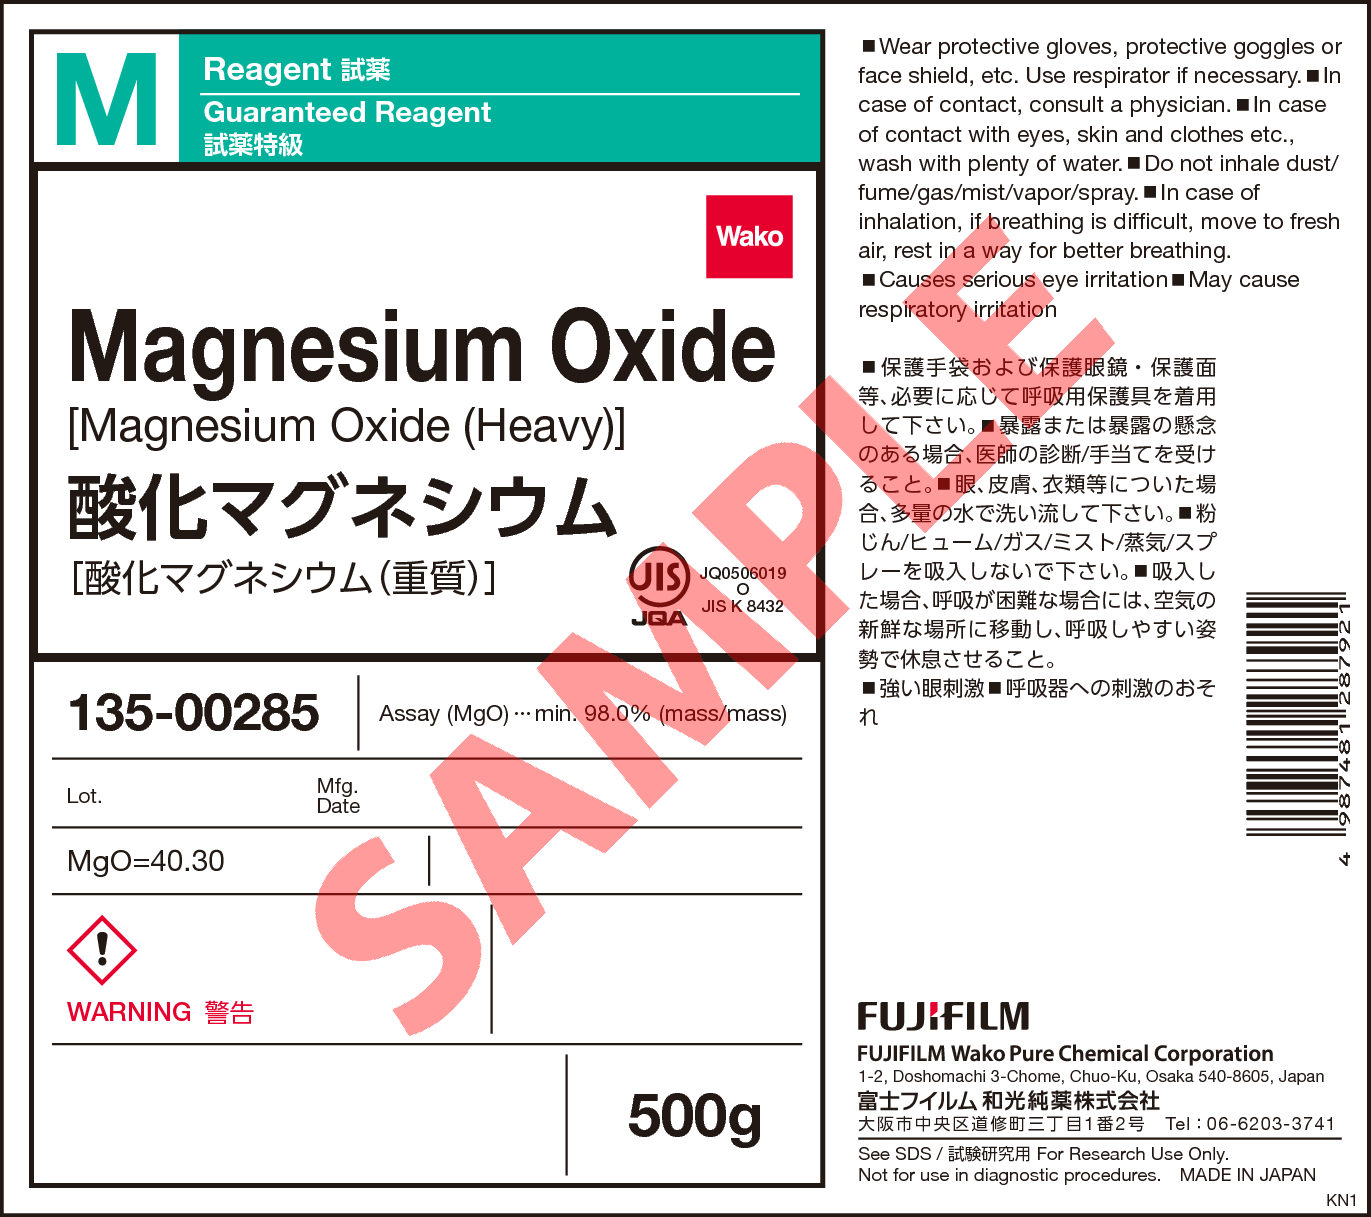 1309 48 4 酸化マグネシウム Magnesium Oxide 131 002 133 135 詳細情報 ライフサイエンス 常用試薬 ラボウェア 試薬 富士フイルム和光純薬